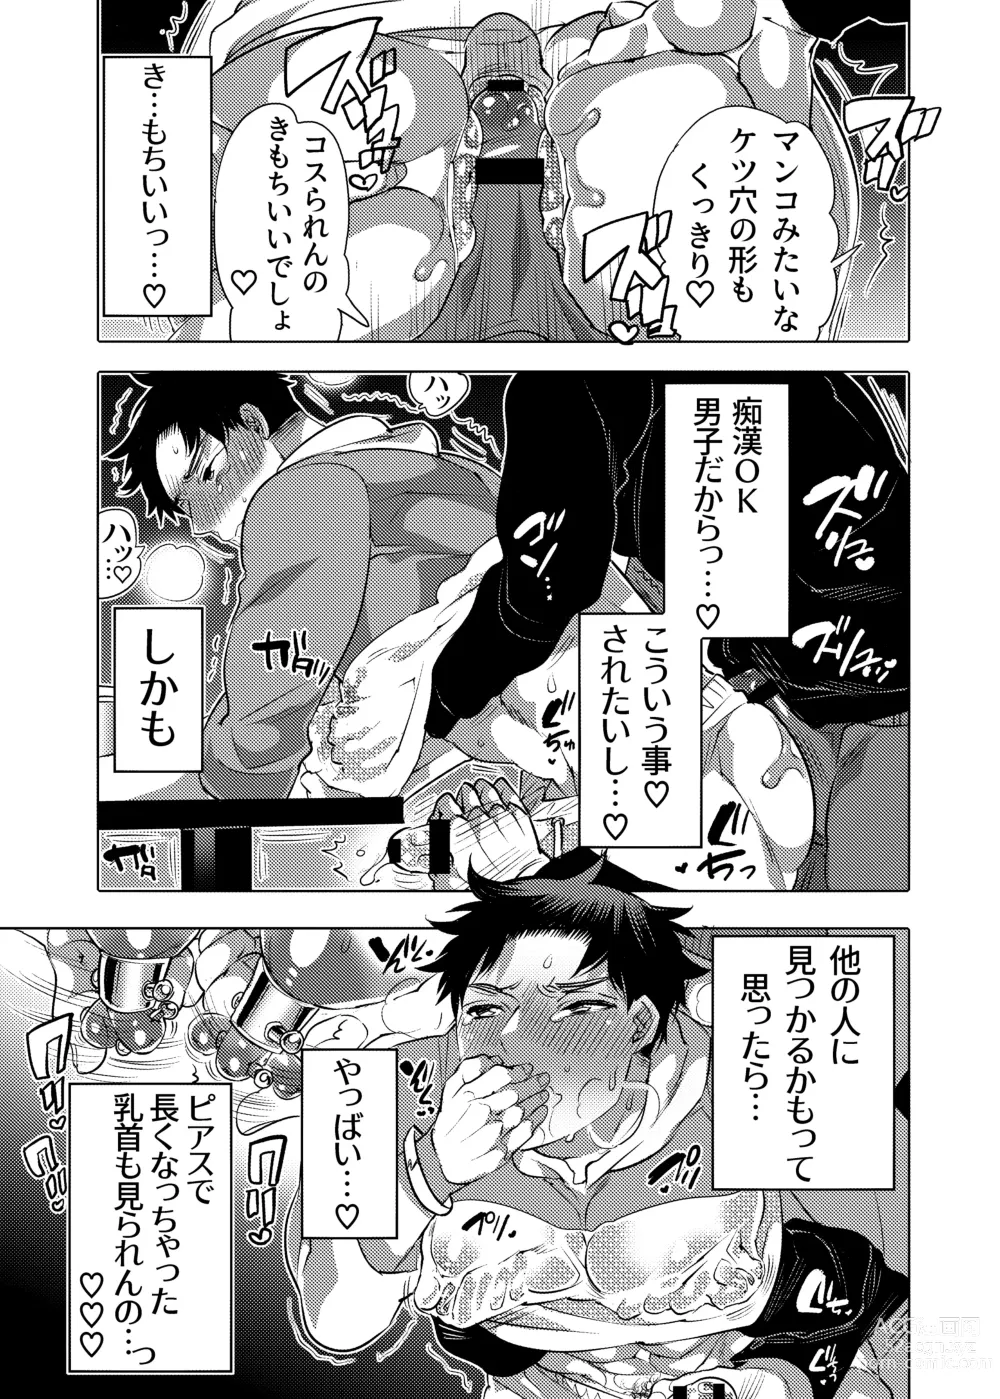 Page 7 of doujinshi Chikan OK Sare Danshi